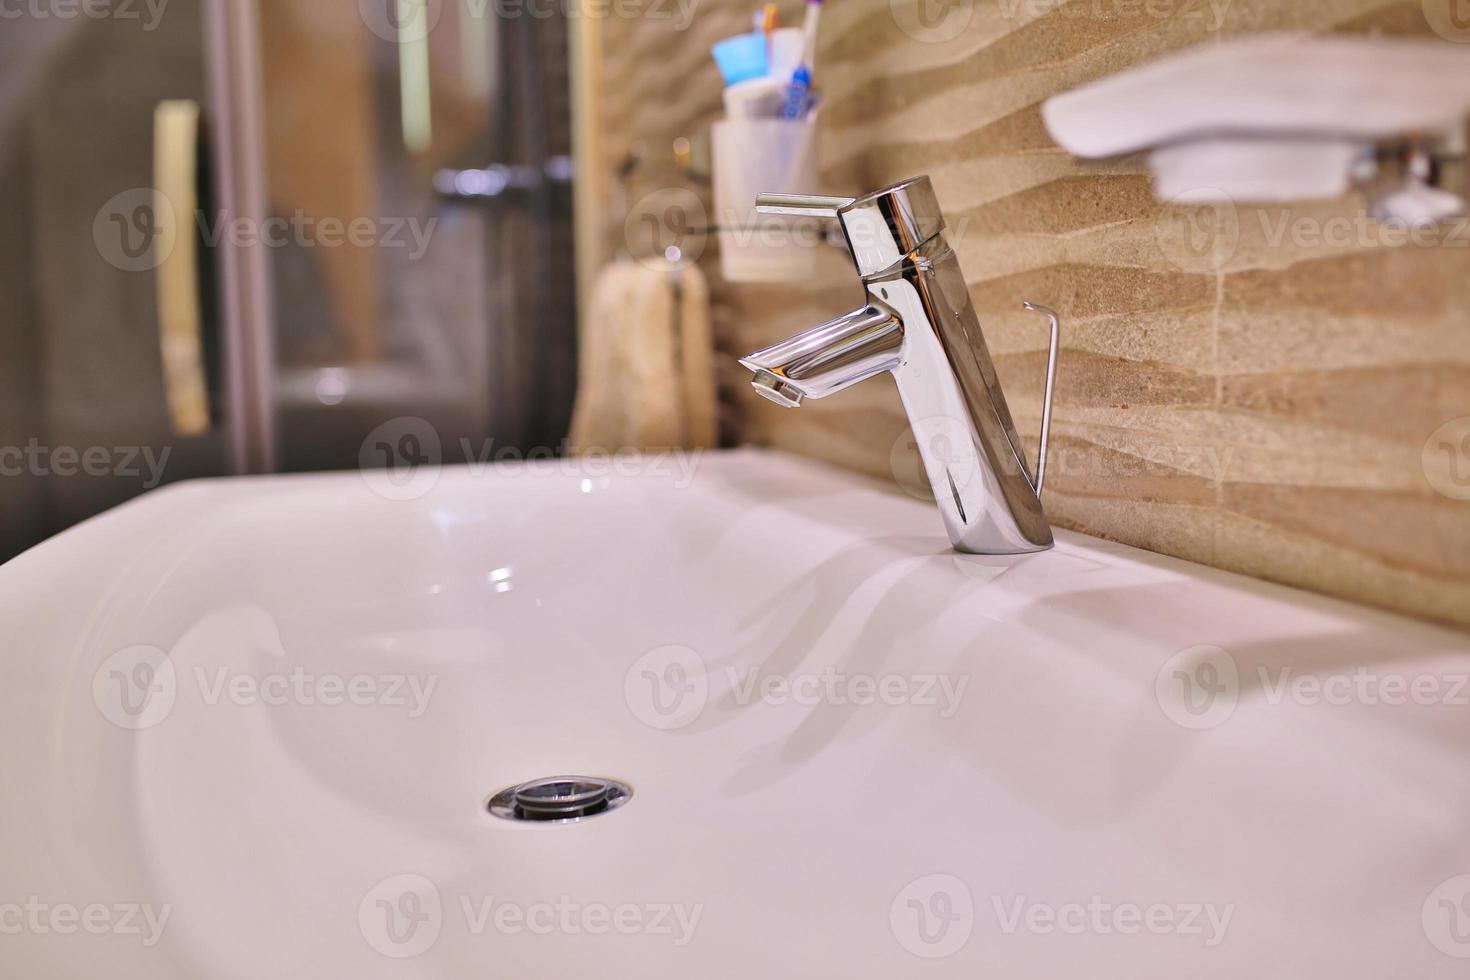 Mezclador de grifo de lujo en un lavabo blanco en un hermoso baño interior gris. Vista de cerca del bonito grifo de metal en el baño moderno foto